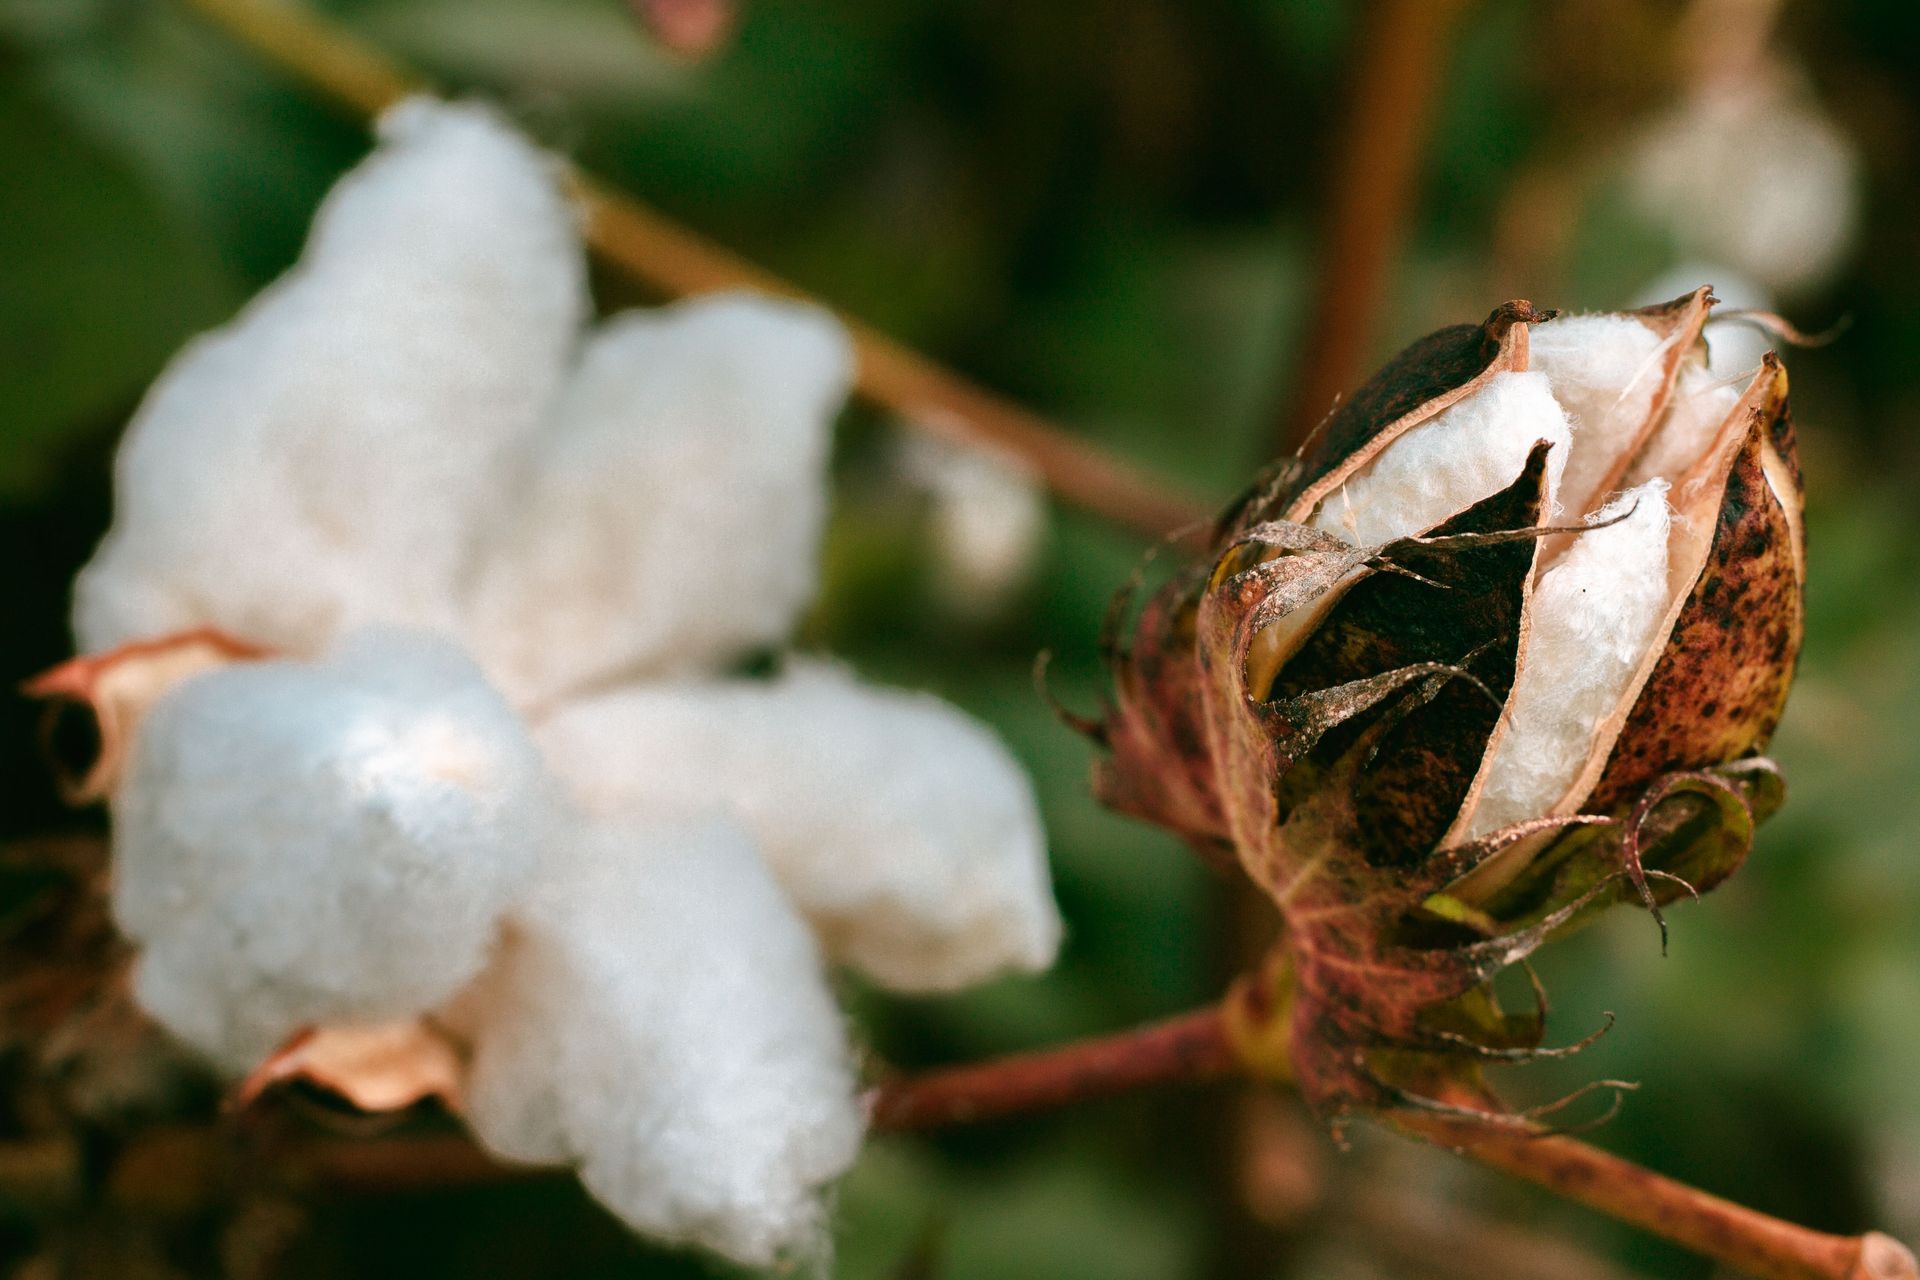 Fotografia de uma planta de algodão, onde um capulho já está aberto e com as plumas expostas